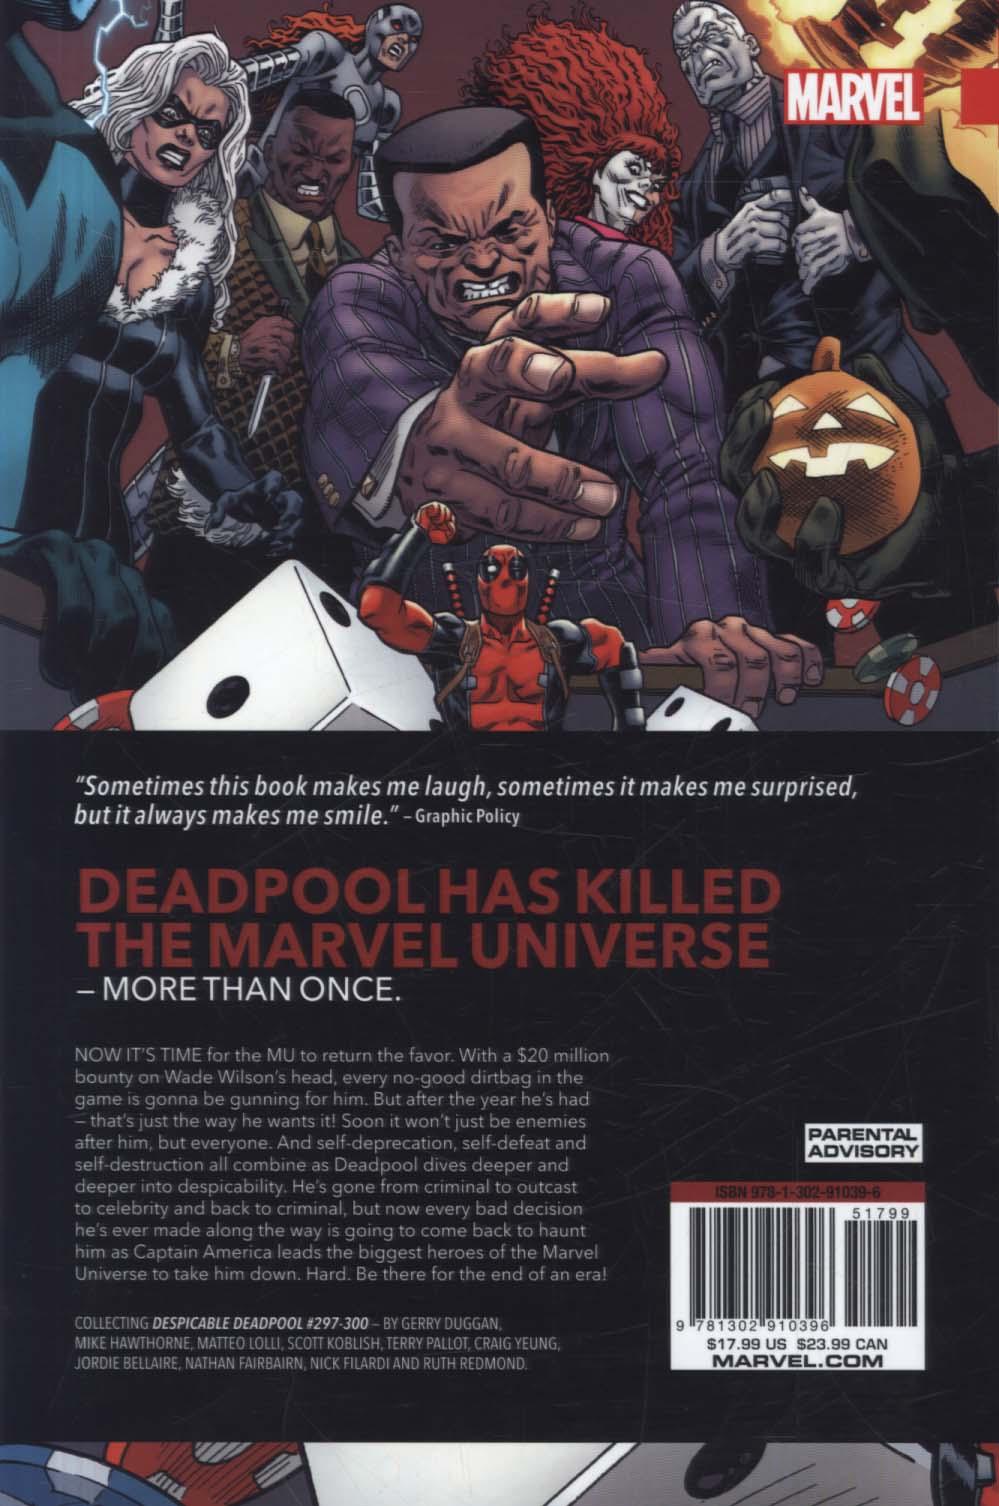 Despicable Deadpool Vol. 3: The Marvel Universe Kills Deadpo